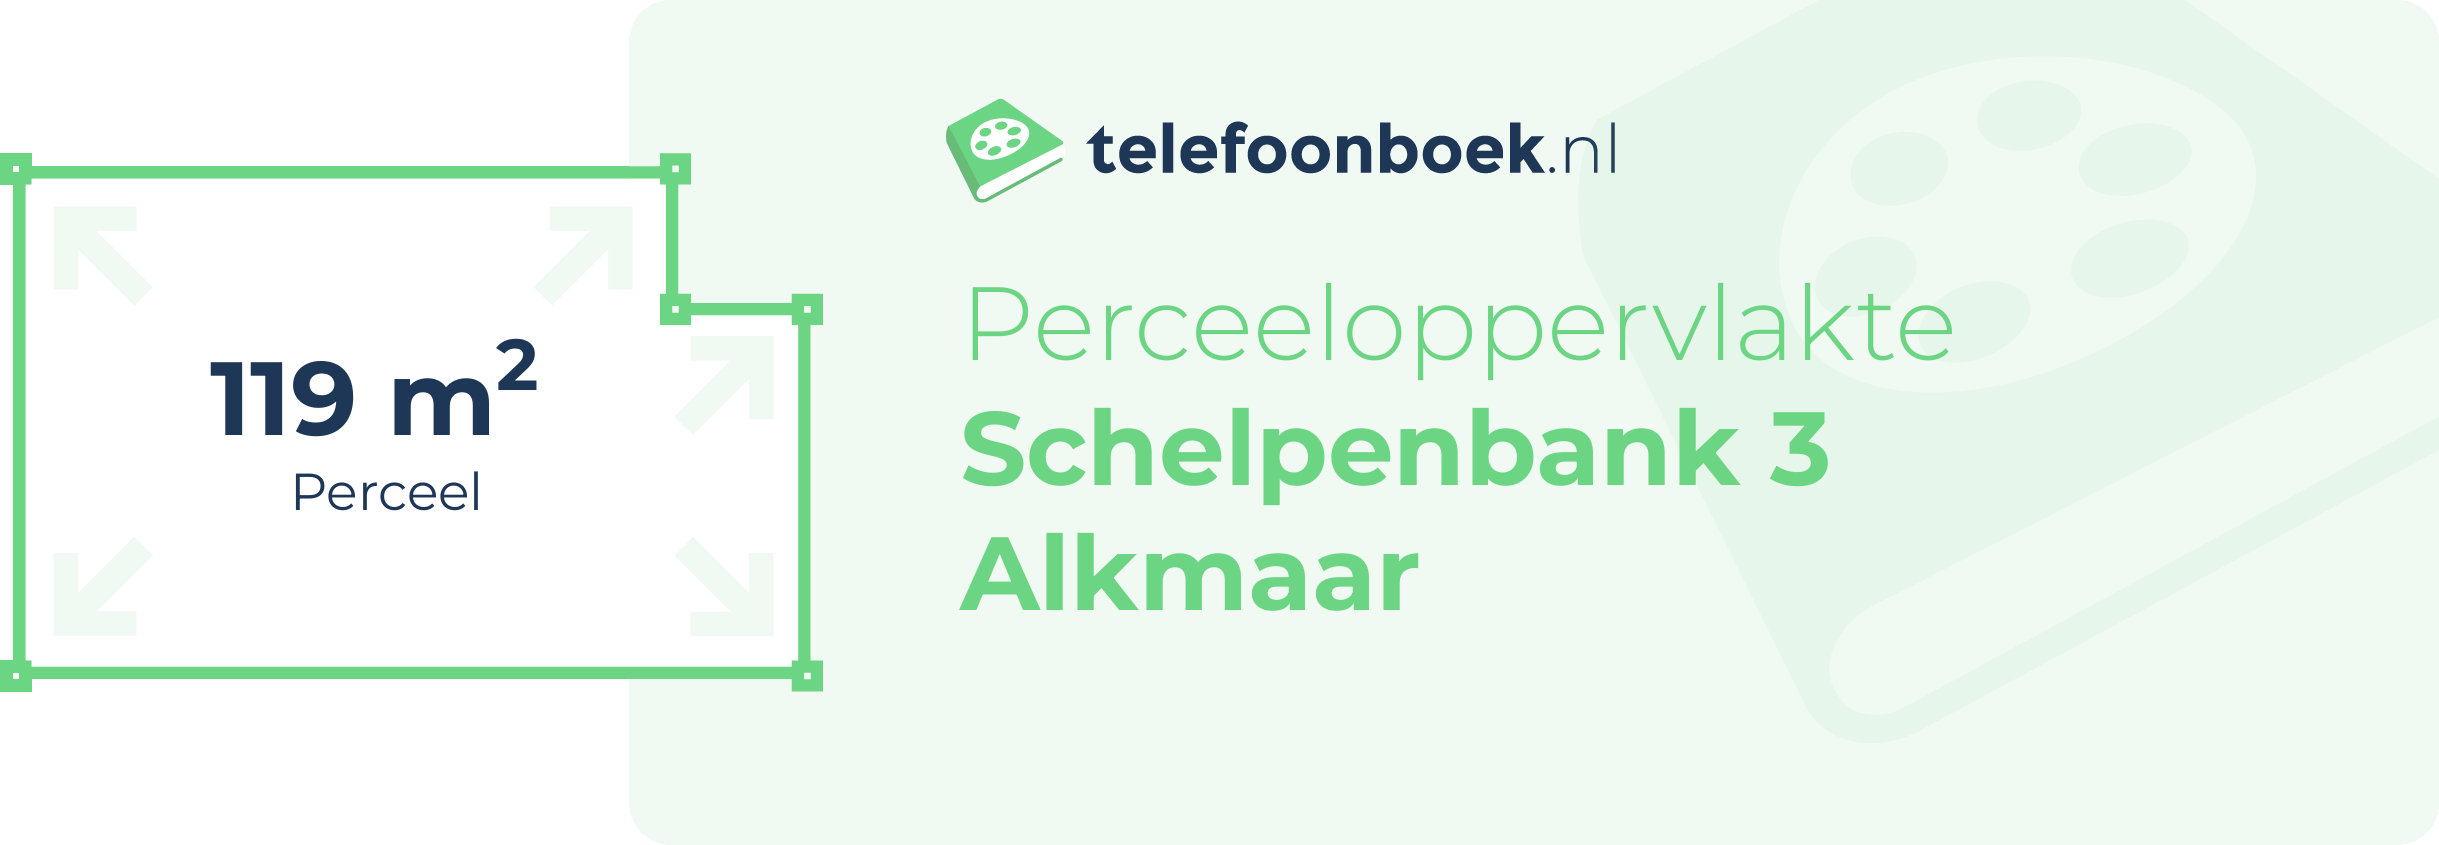 Perceeloppervlakte Schelpenbank 3 Alkmaar